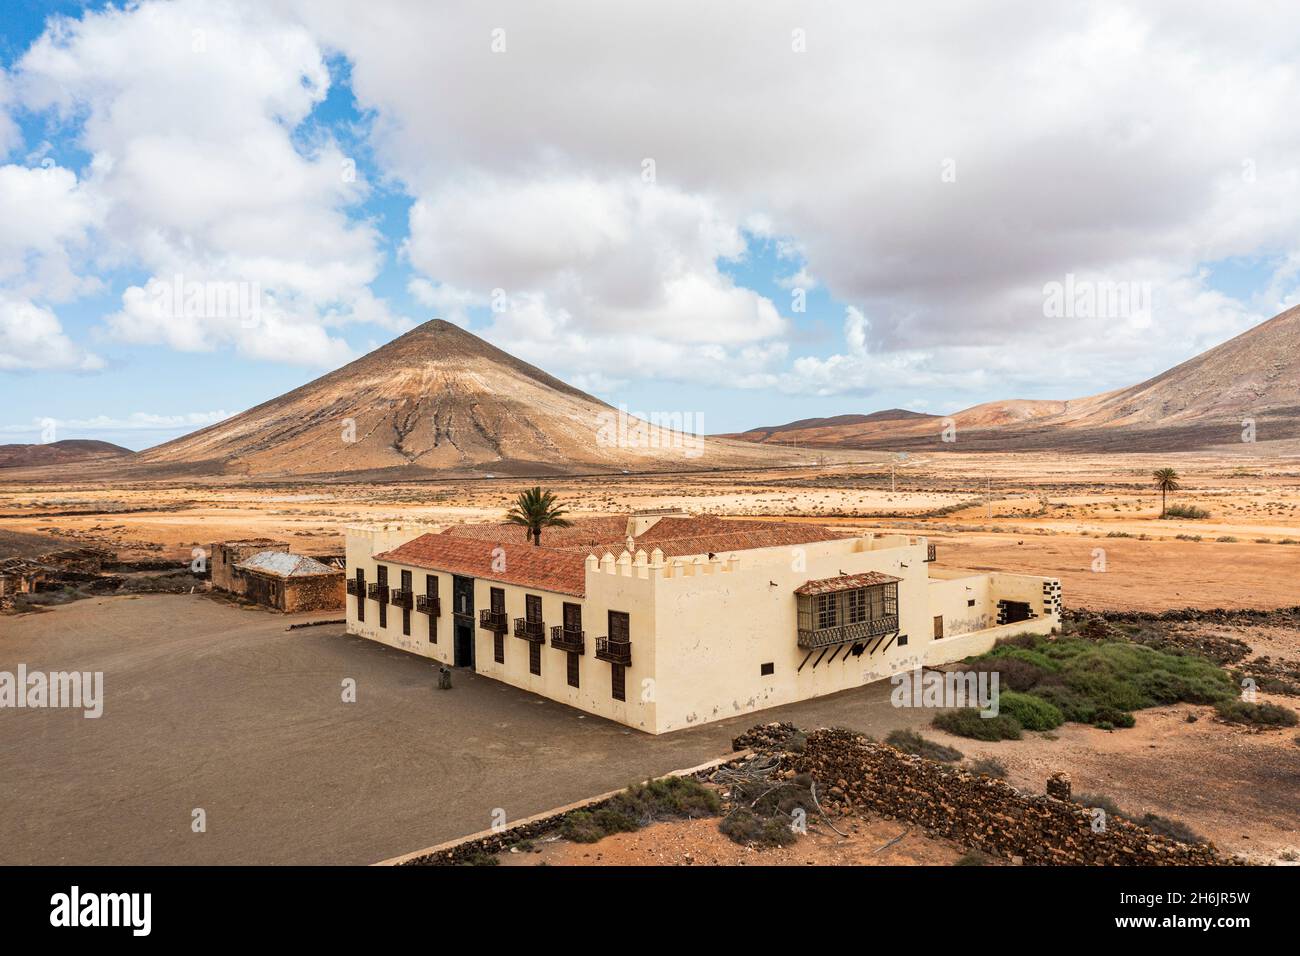 Casa de los Coroneles (Maison des colonels) entourée de montagnes volcaniques, la Oliva, Fuerteventura, îles Canaries, Espagne,Atlantique, Europe Banque D'Images